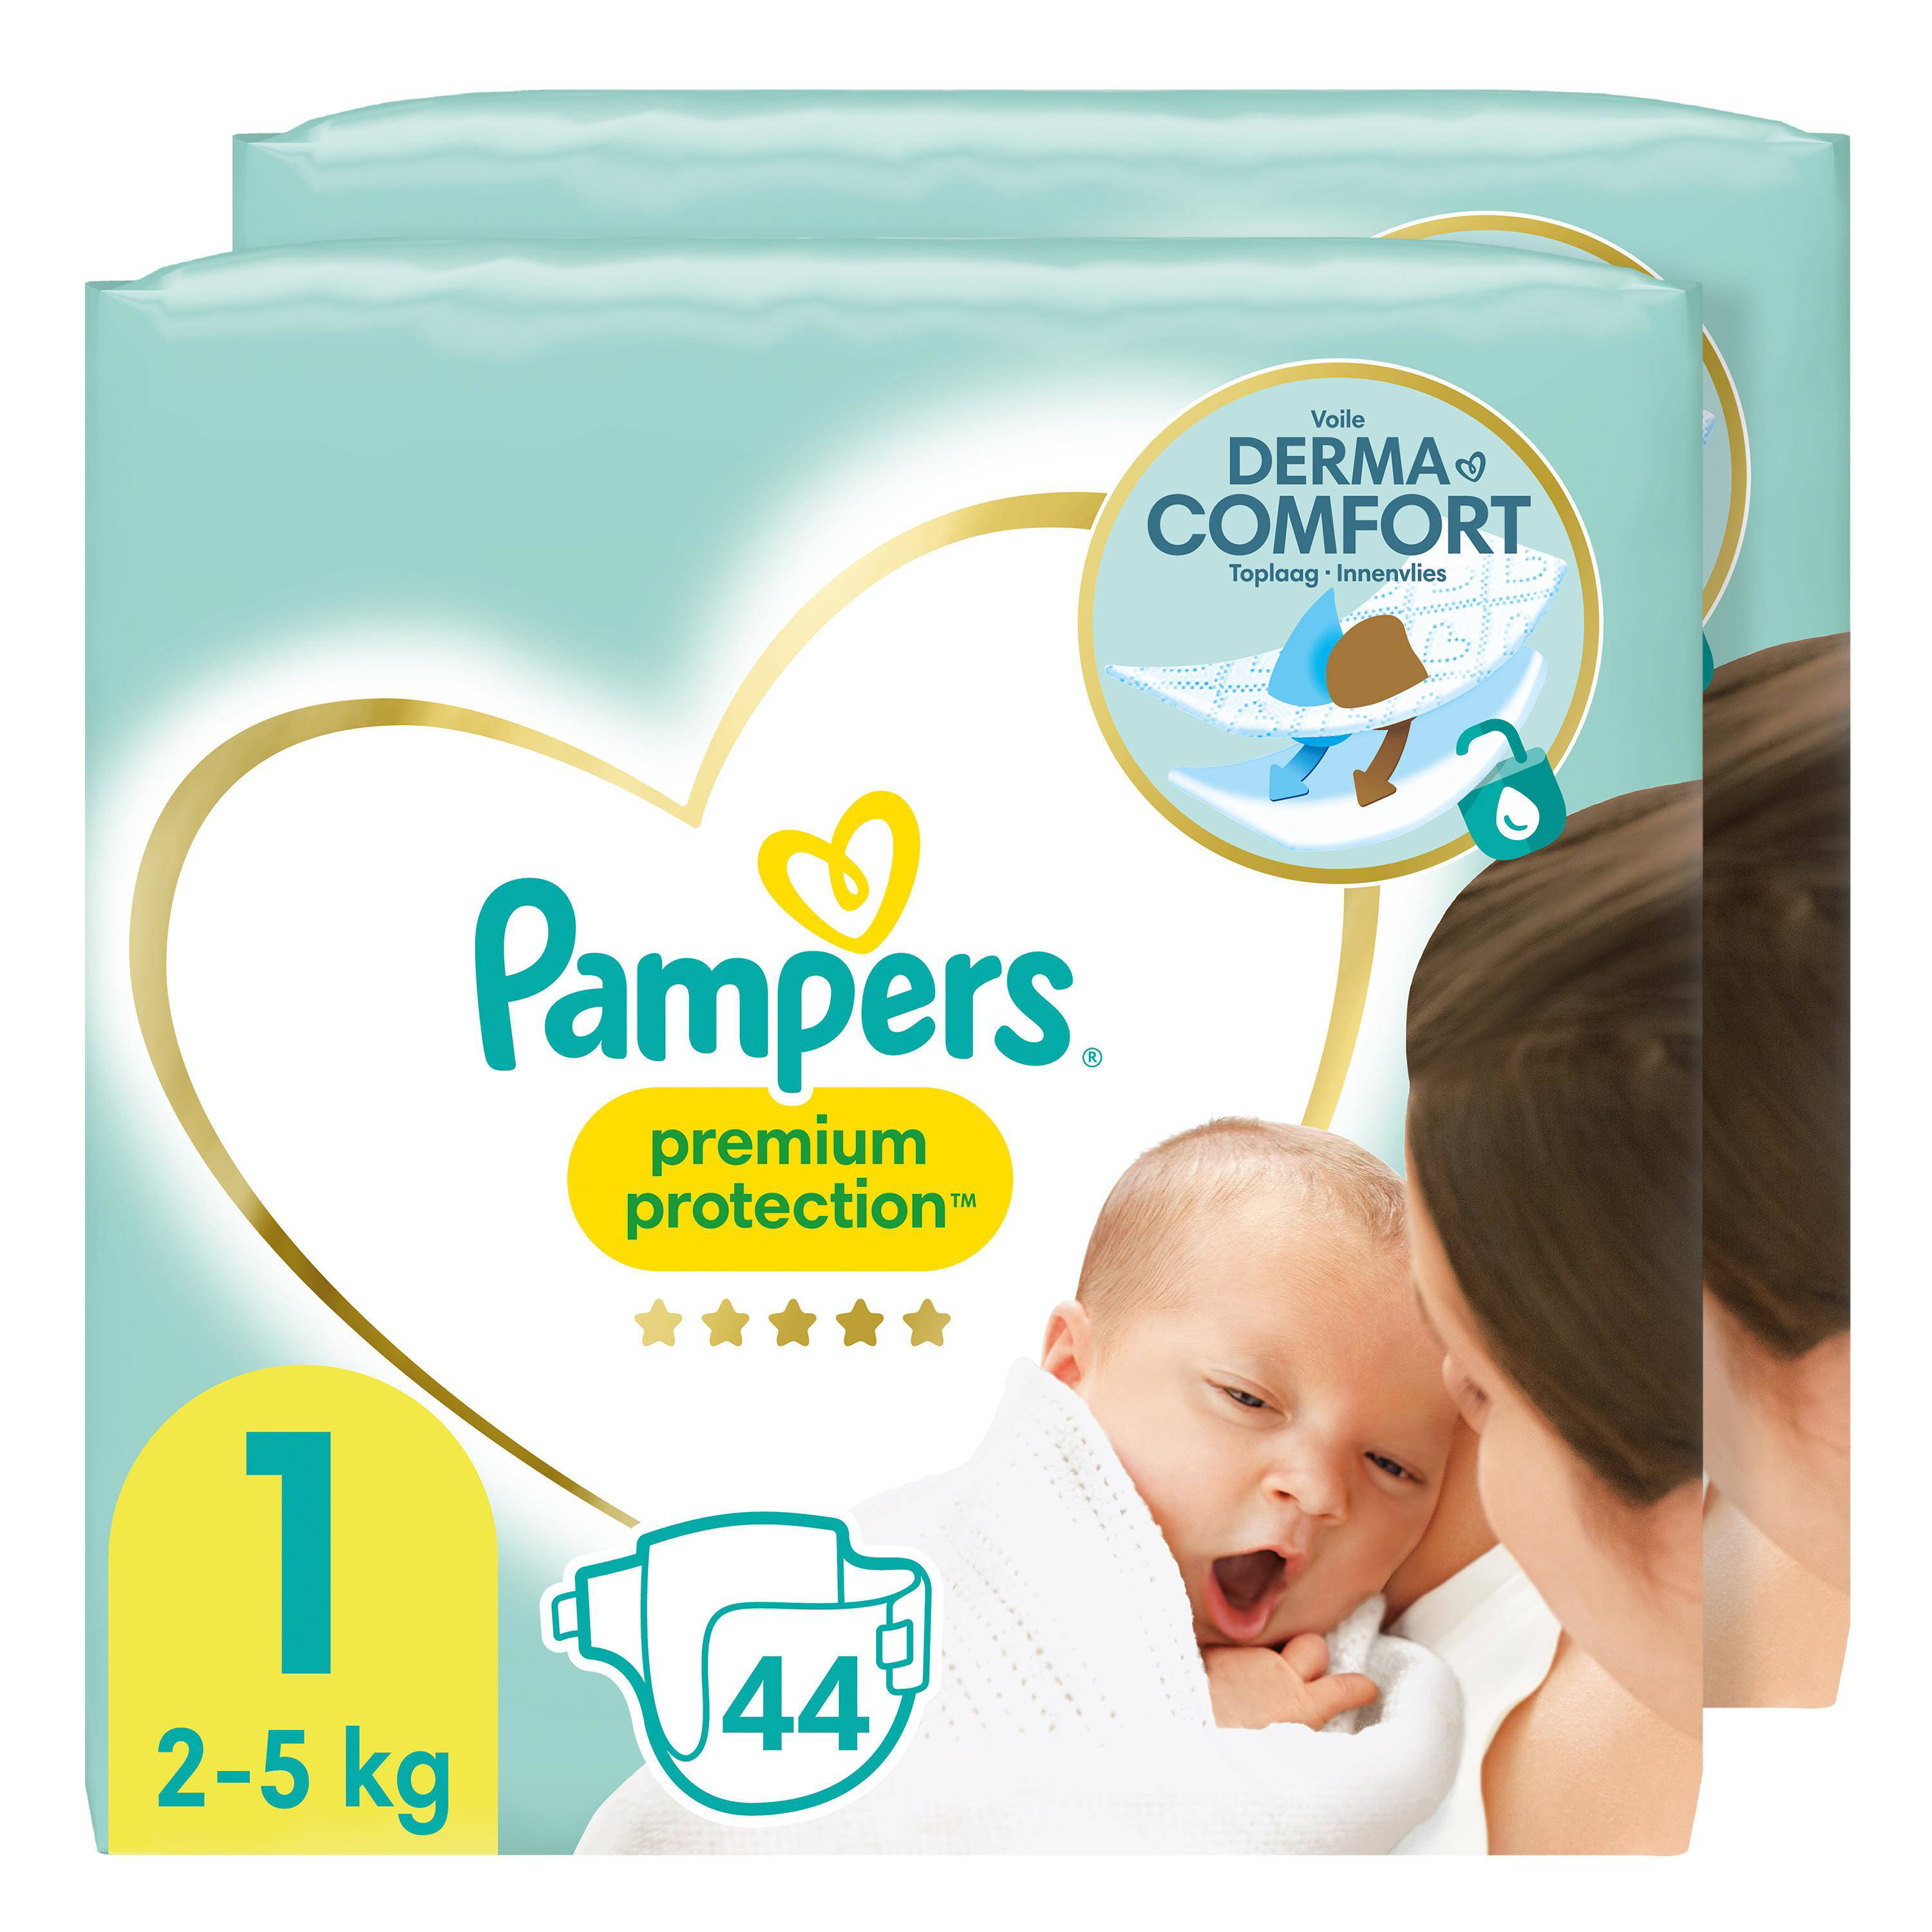 Pampers Premium Protection(2kg 5kg)2 x 44 Luiers alleen verkrijgbaar i.c.m. actie online kopen